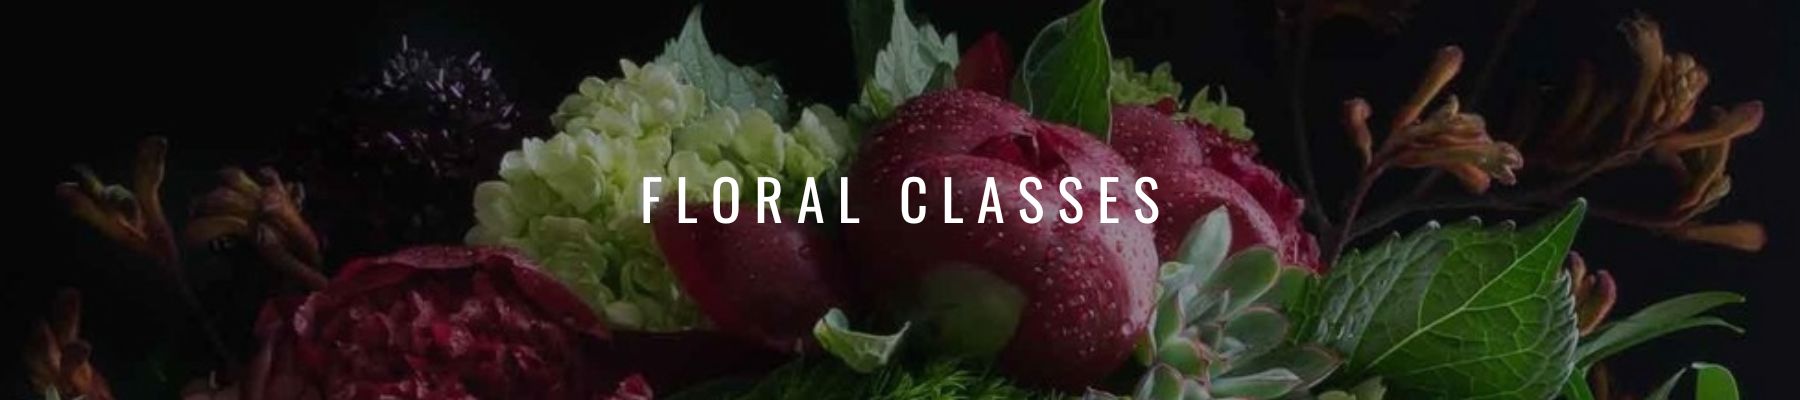 Floral Classes